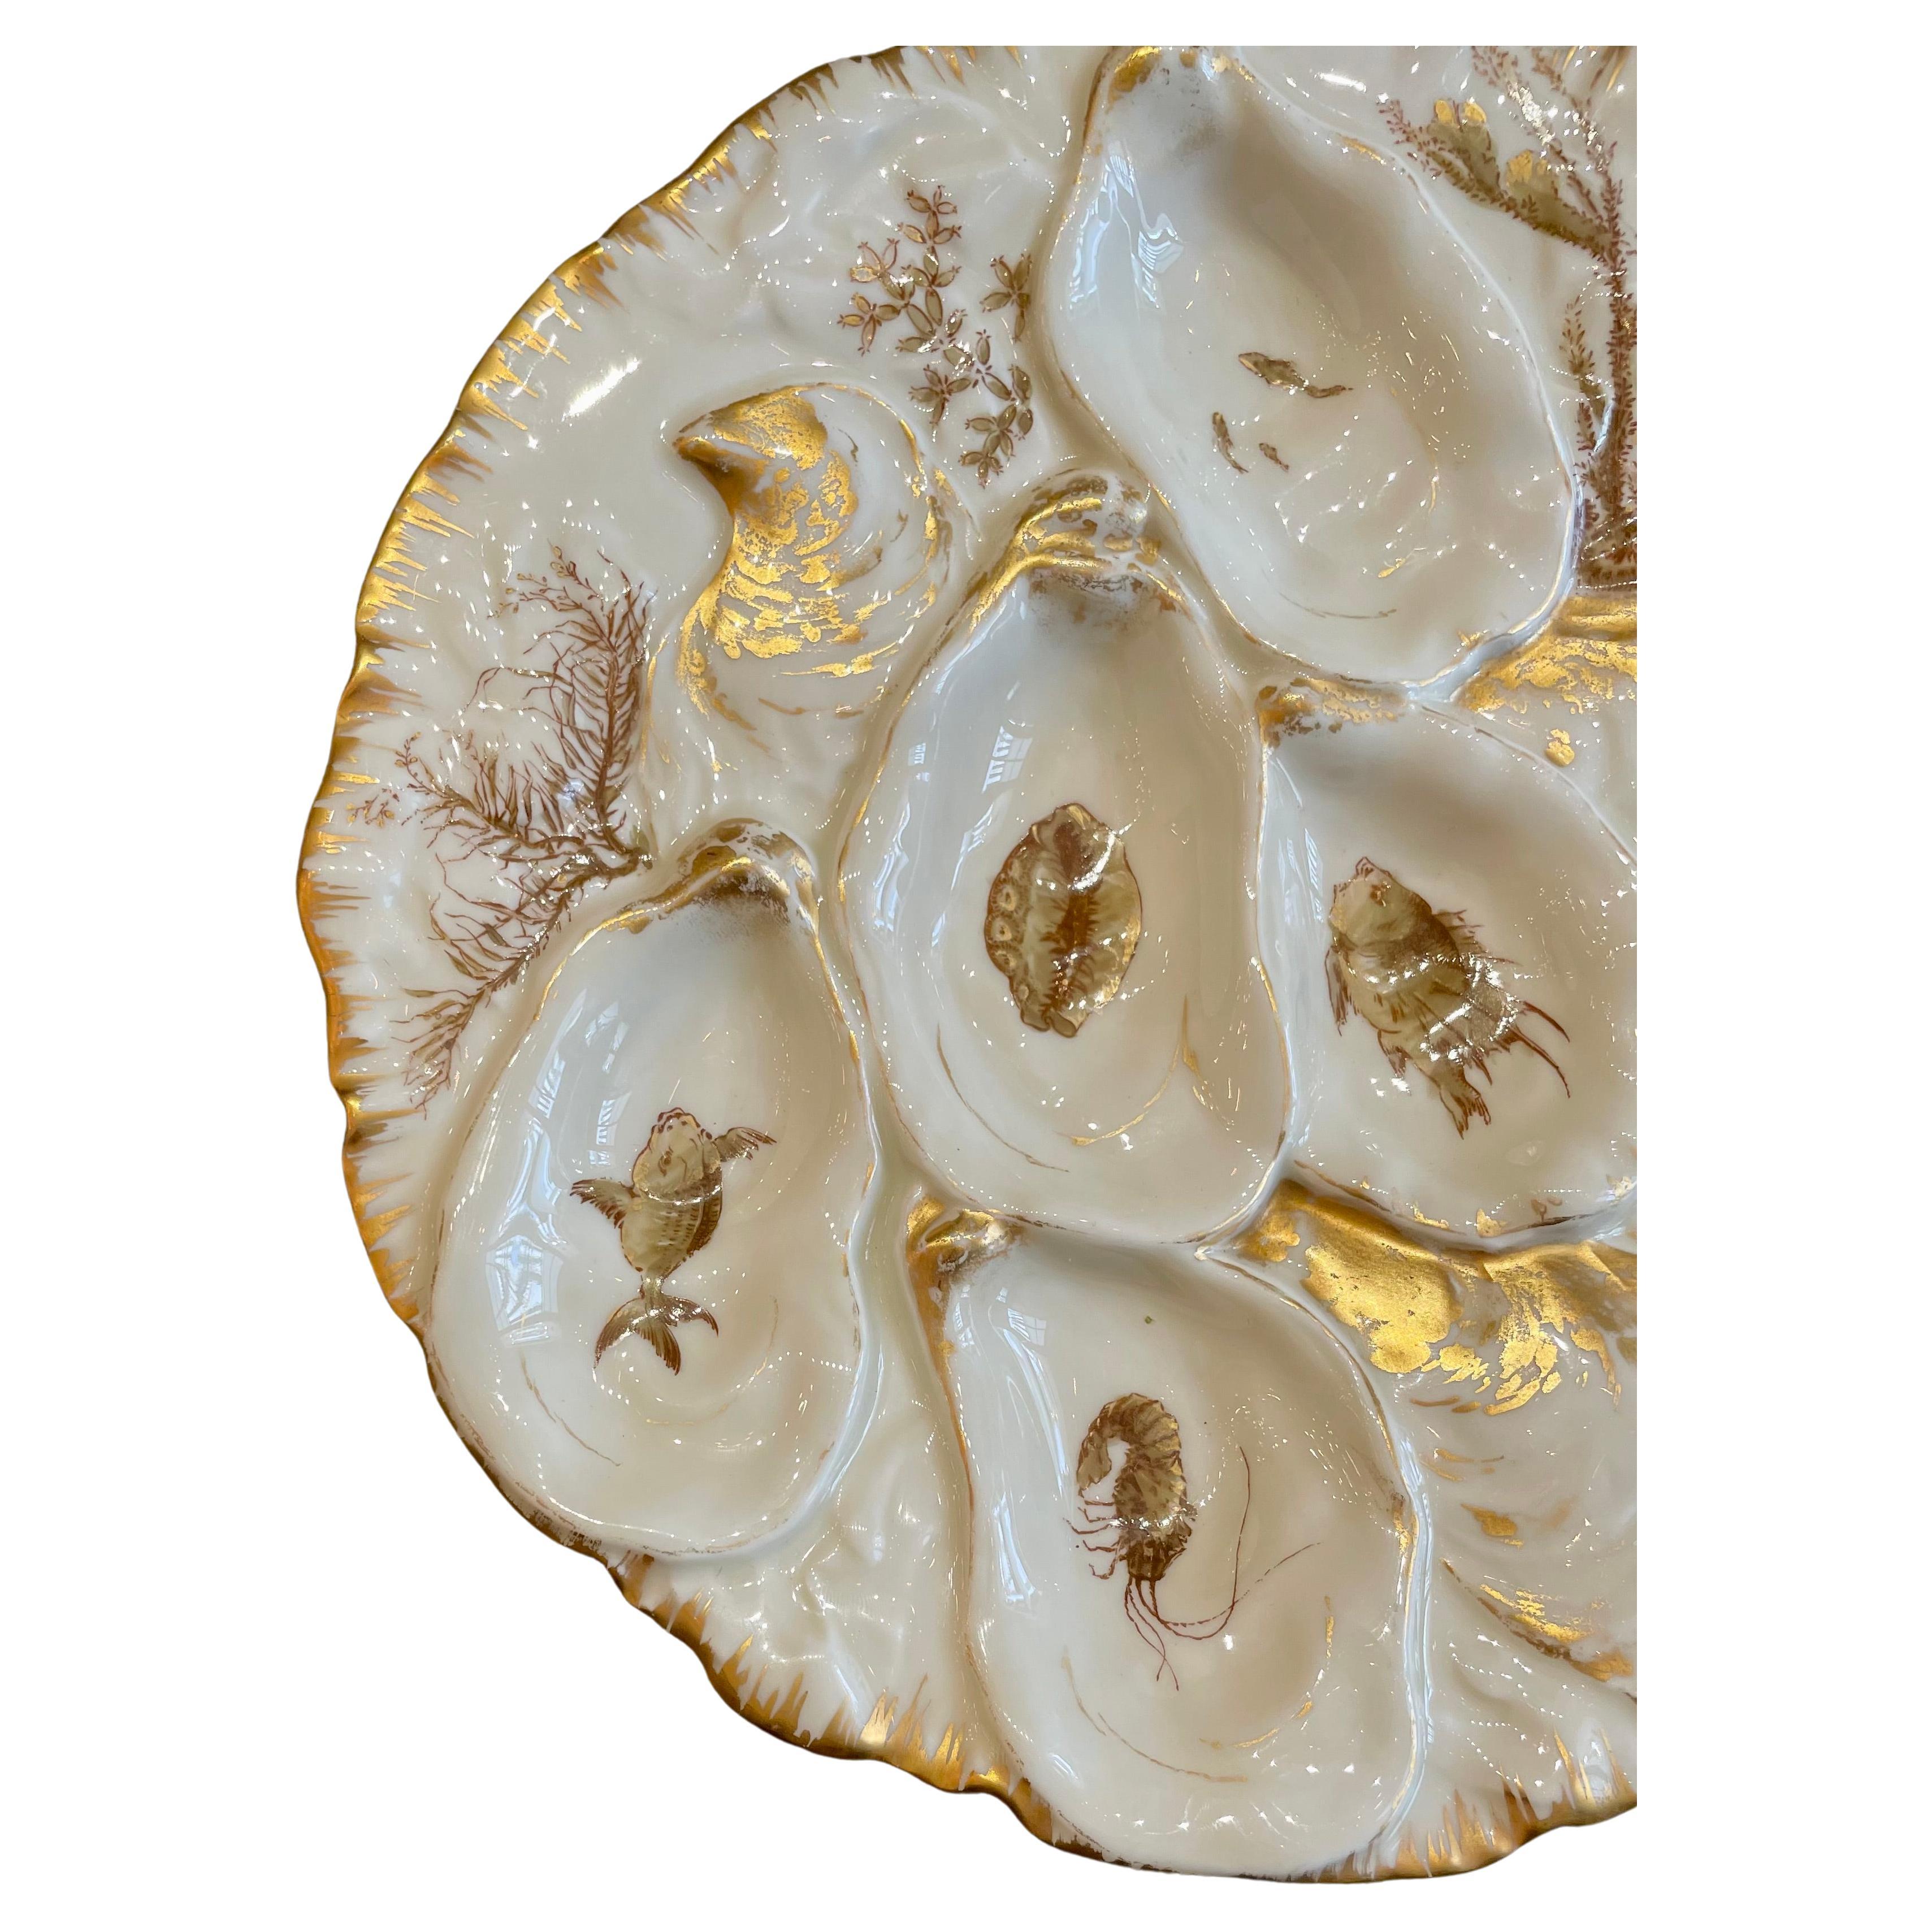 Ancienne assiette à huîtres en porcelaine de Limoges peinte de la vie marine.
Détails dorés peints à la main sur un fond ivoire avec des poissons, des écrevisses, des coquillages et du corail.